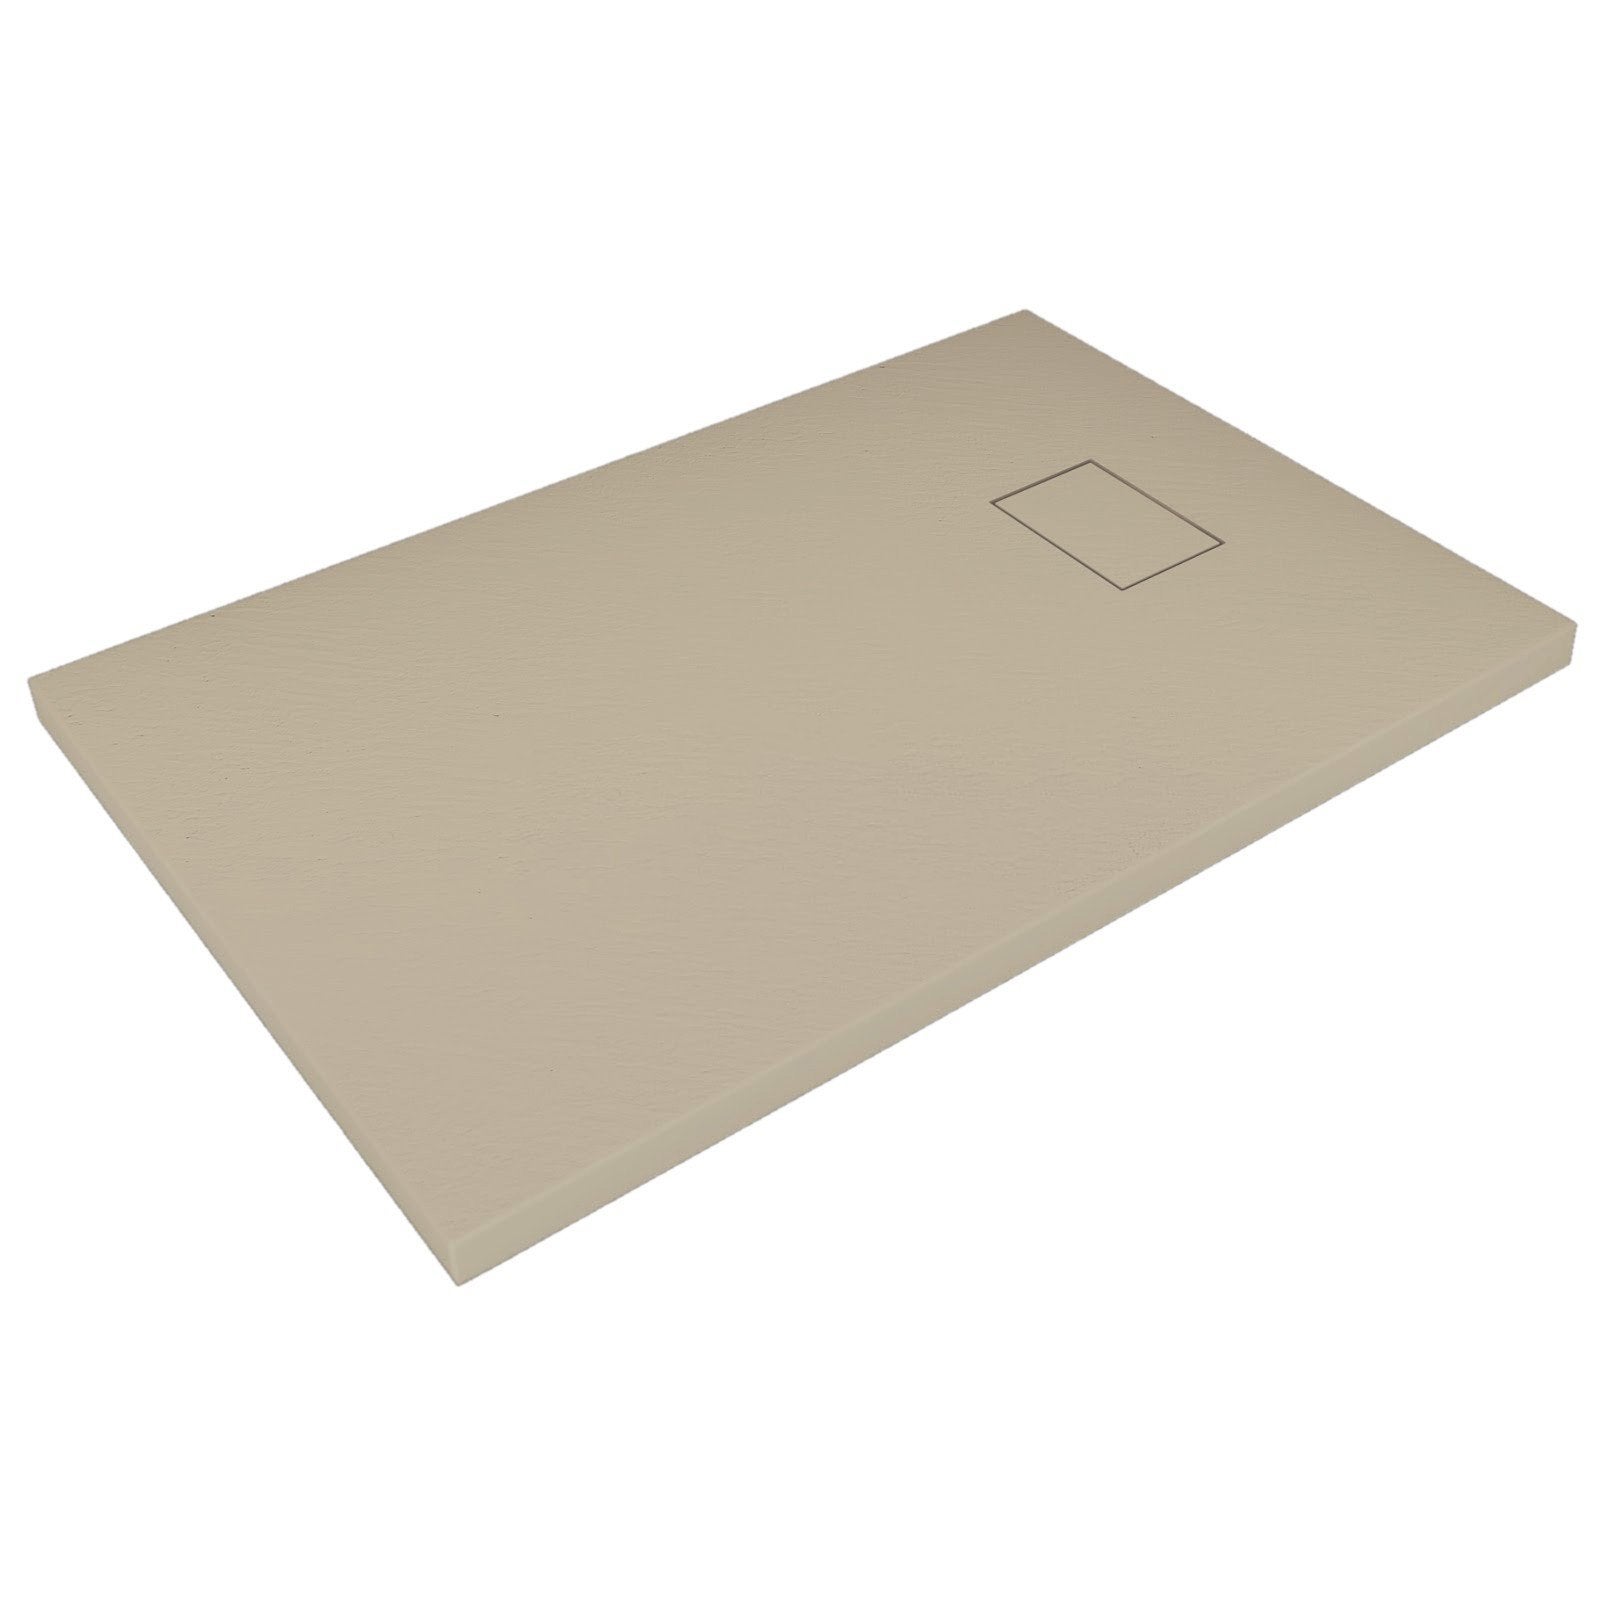 Piatto doccia 80x160 Tortora beige H.2.6 cm effetto pietra ardesia SMC in resina termoformata.